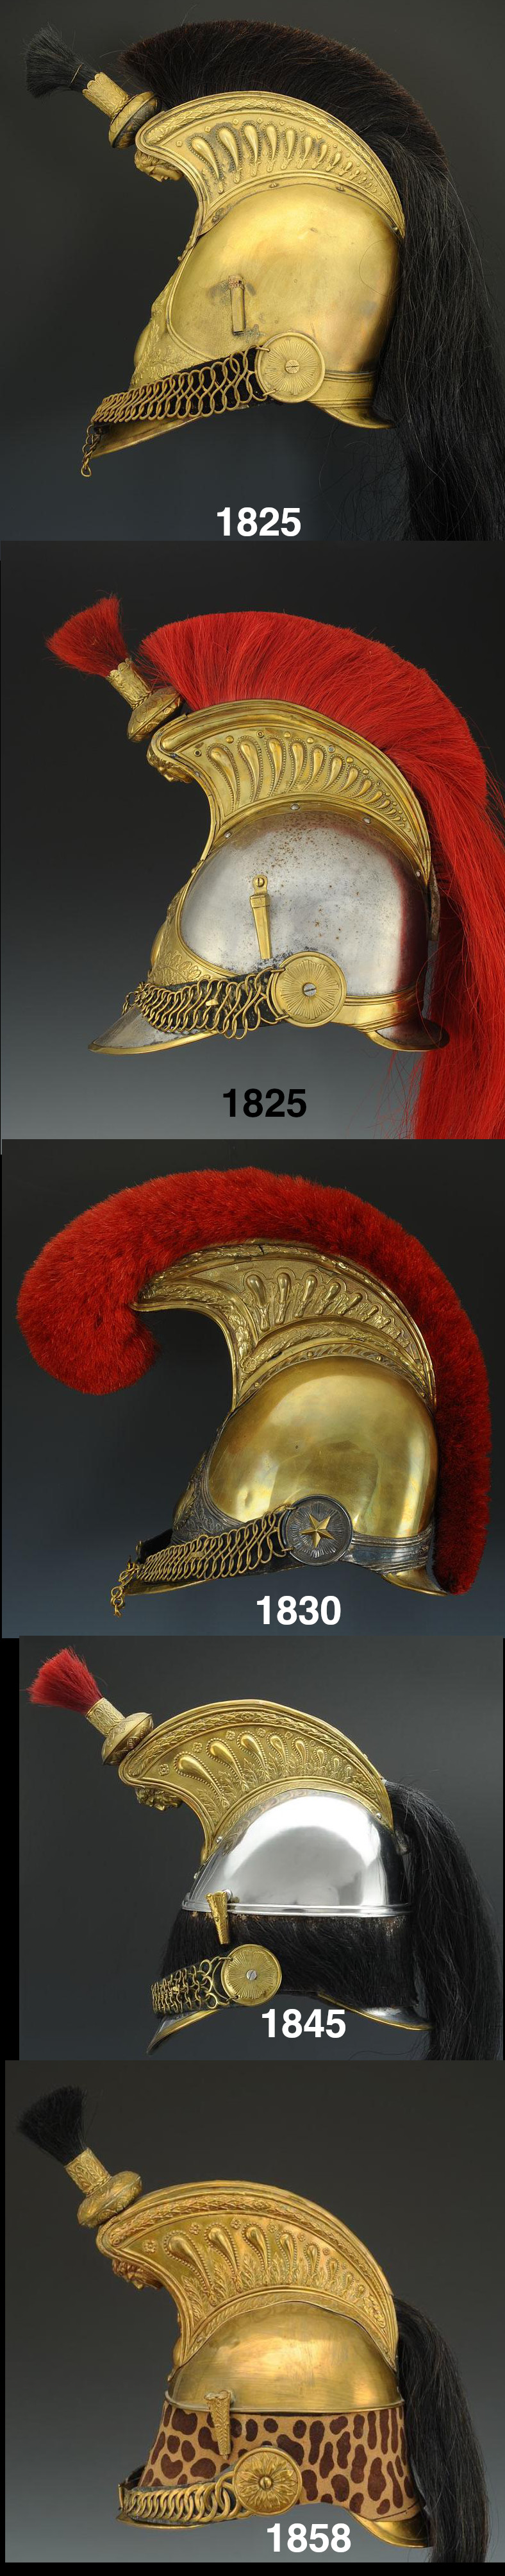 modelisation buste Monarchie de Juillet et Second Empire Evolut10